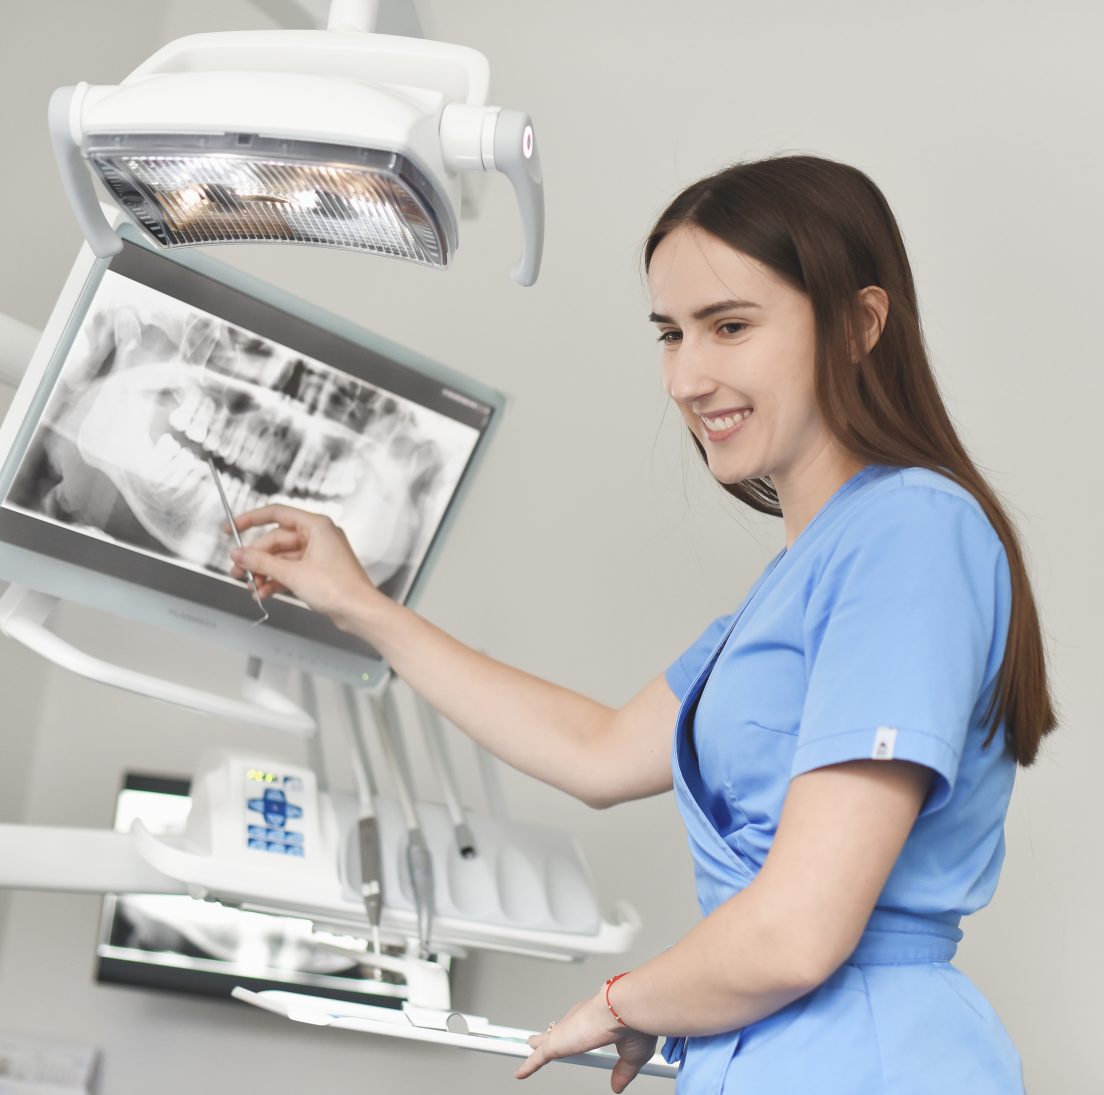 Odontologė Gabija komentuoja panoraminę dantų nuotrauką kompiuterio ekrane